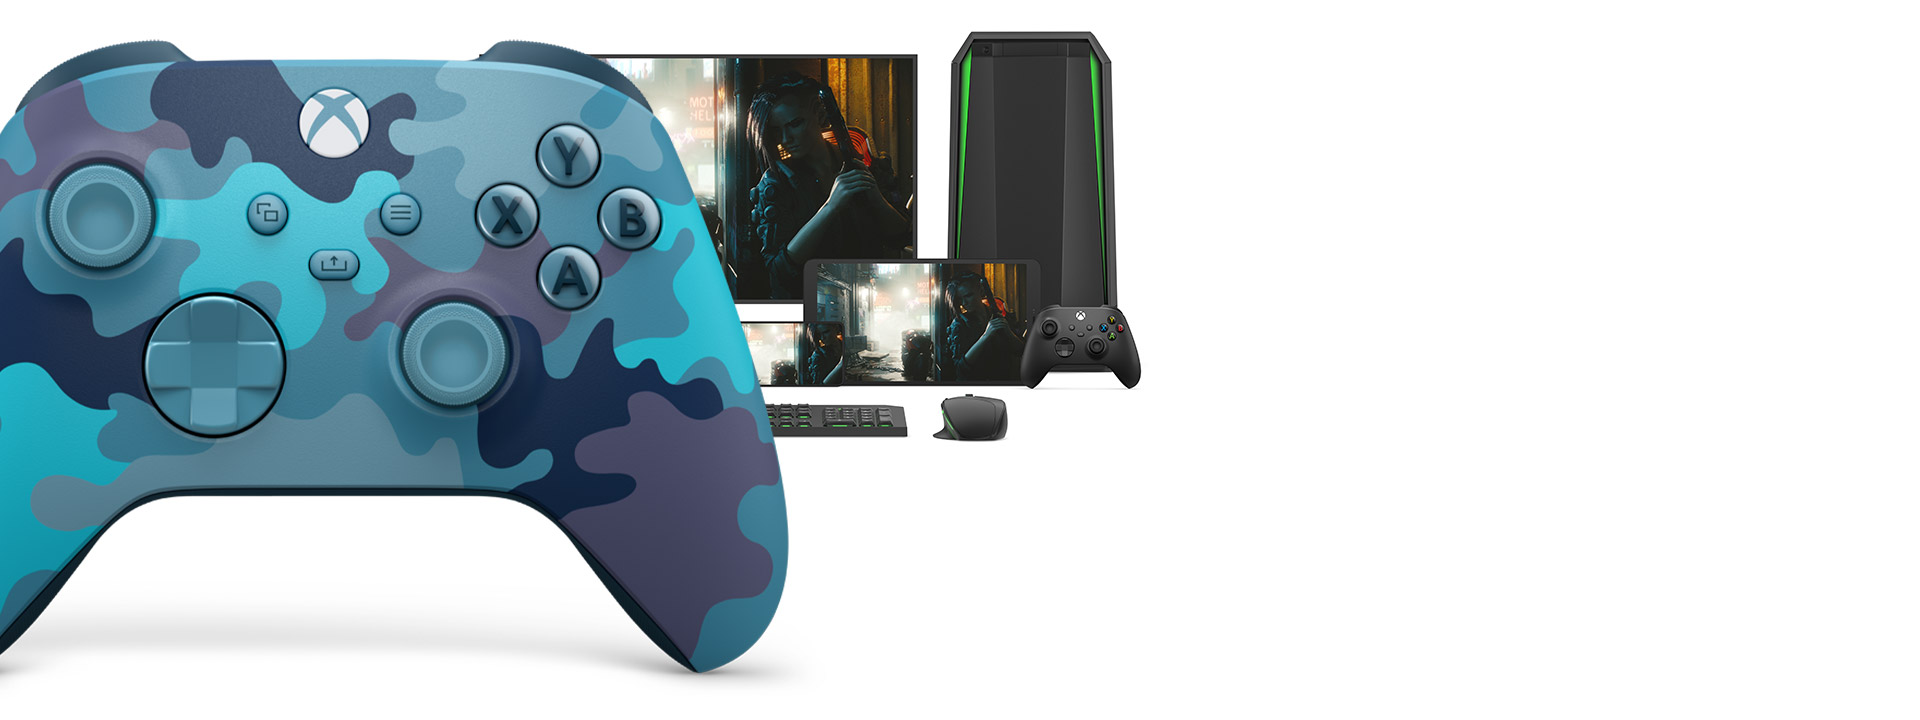 Manette sans fil Xbox - édition spéciale Mineral Camo devant un ordinateur portable, un moniteur, une tablette, un téléphone, une manette sans fil Xbox, une souris et un clavier